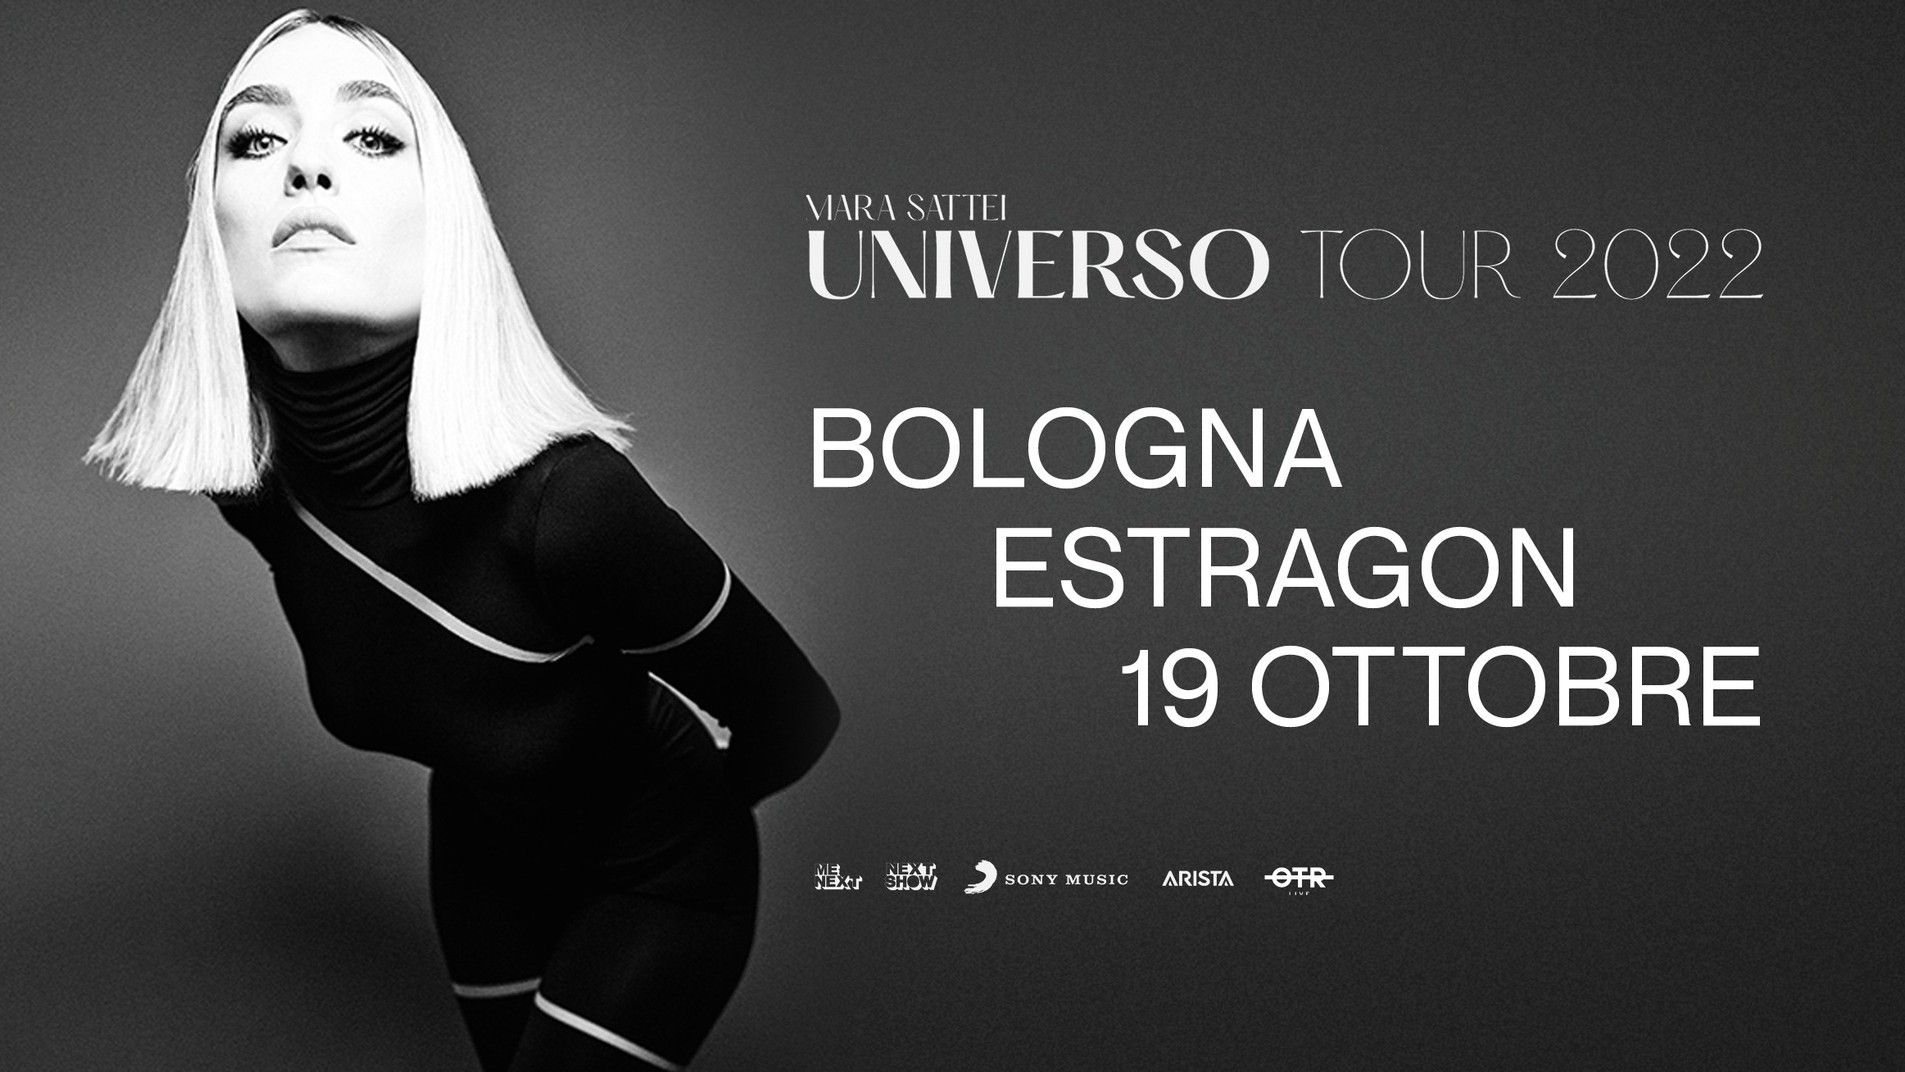 Mara Sattei "Universo Tour"